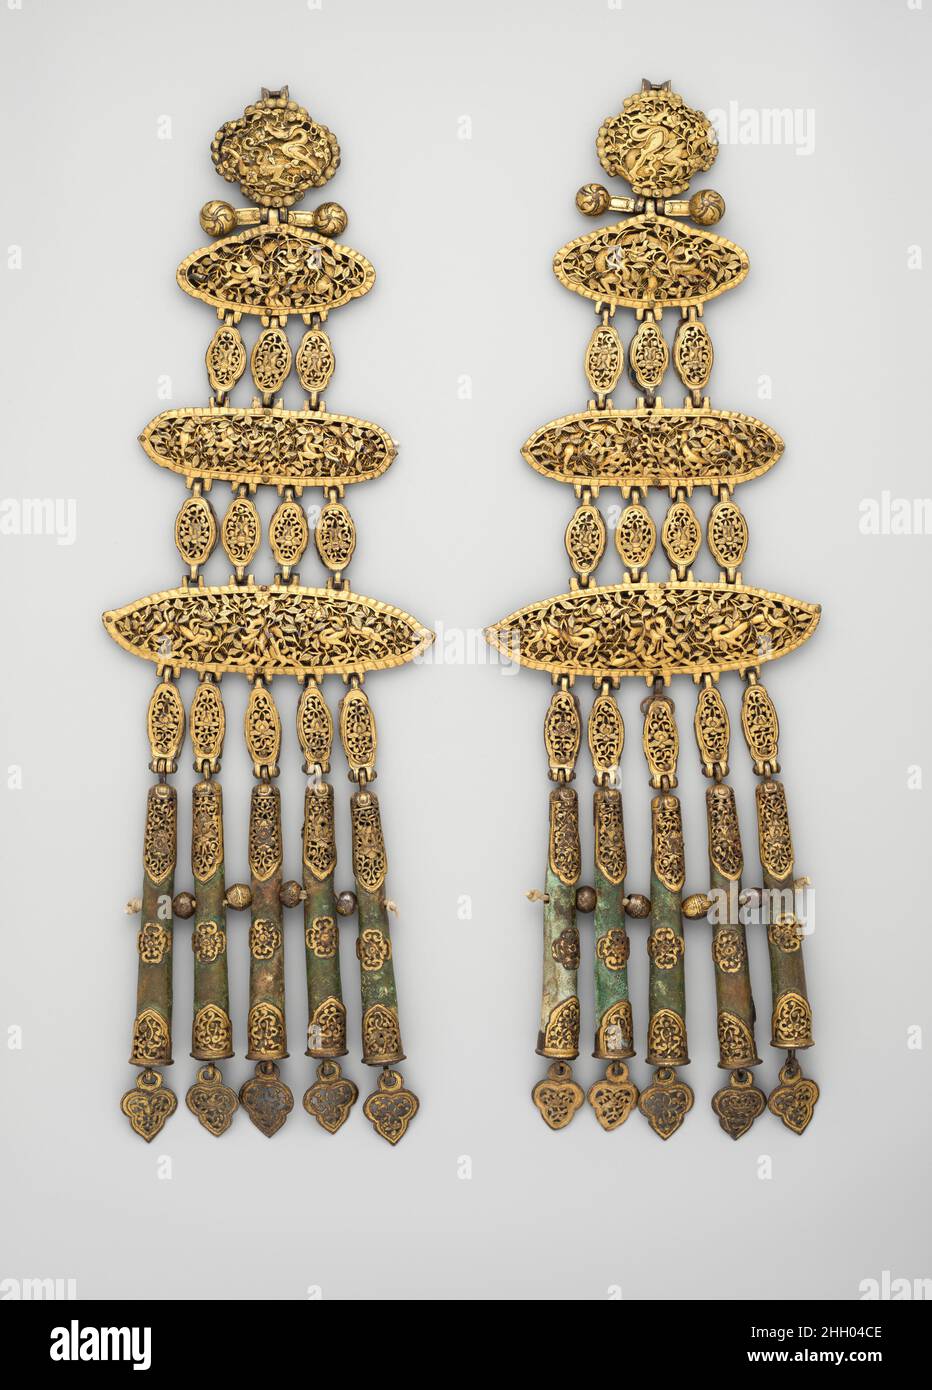 Par de de Crupper del siglo 14th–15th Tibetano hecho de hierro delicadamente cincelado y perforado cubierto en una fina capa de oro, la calidad, el detalle y la ejecución fina